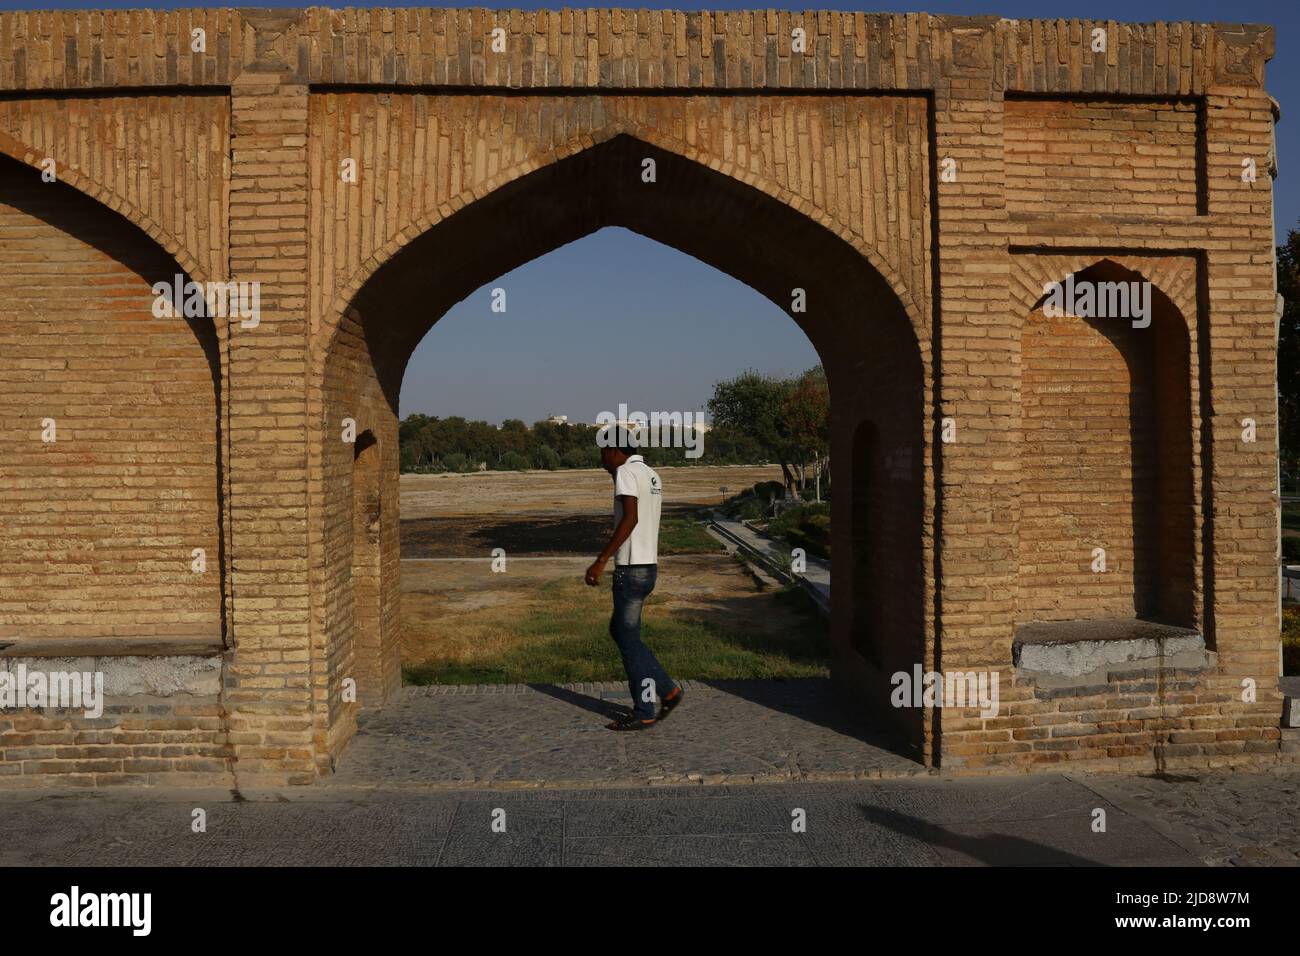 Allah-Verdi-Khan-Brücke a Isfahan, Iran. Auf persisch heißt sie si-o-se Pol. Die Brücke hat zwei Etagen und überspannt den Zayandeh Rud. Dado Brücke cappello 33 Bögen. Der Blick geht durch einen Steinbogen auf den si-o-se Pol. Im Vordergrund ist eine person zu sehen. Foto Stock